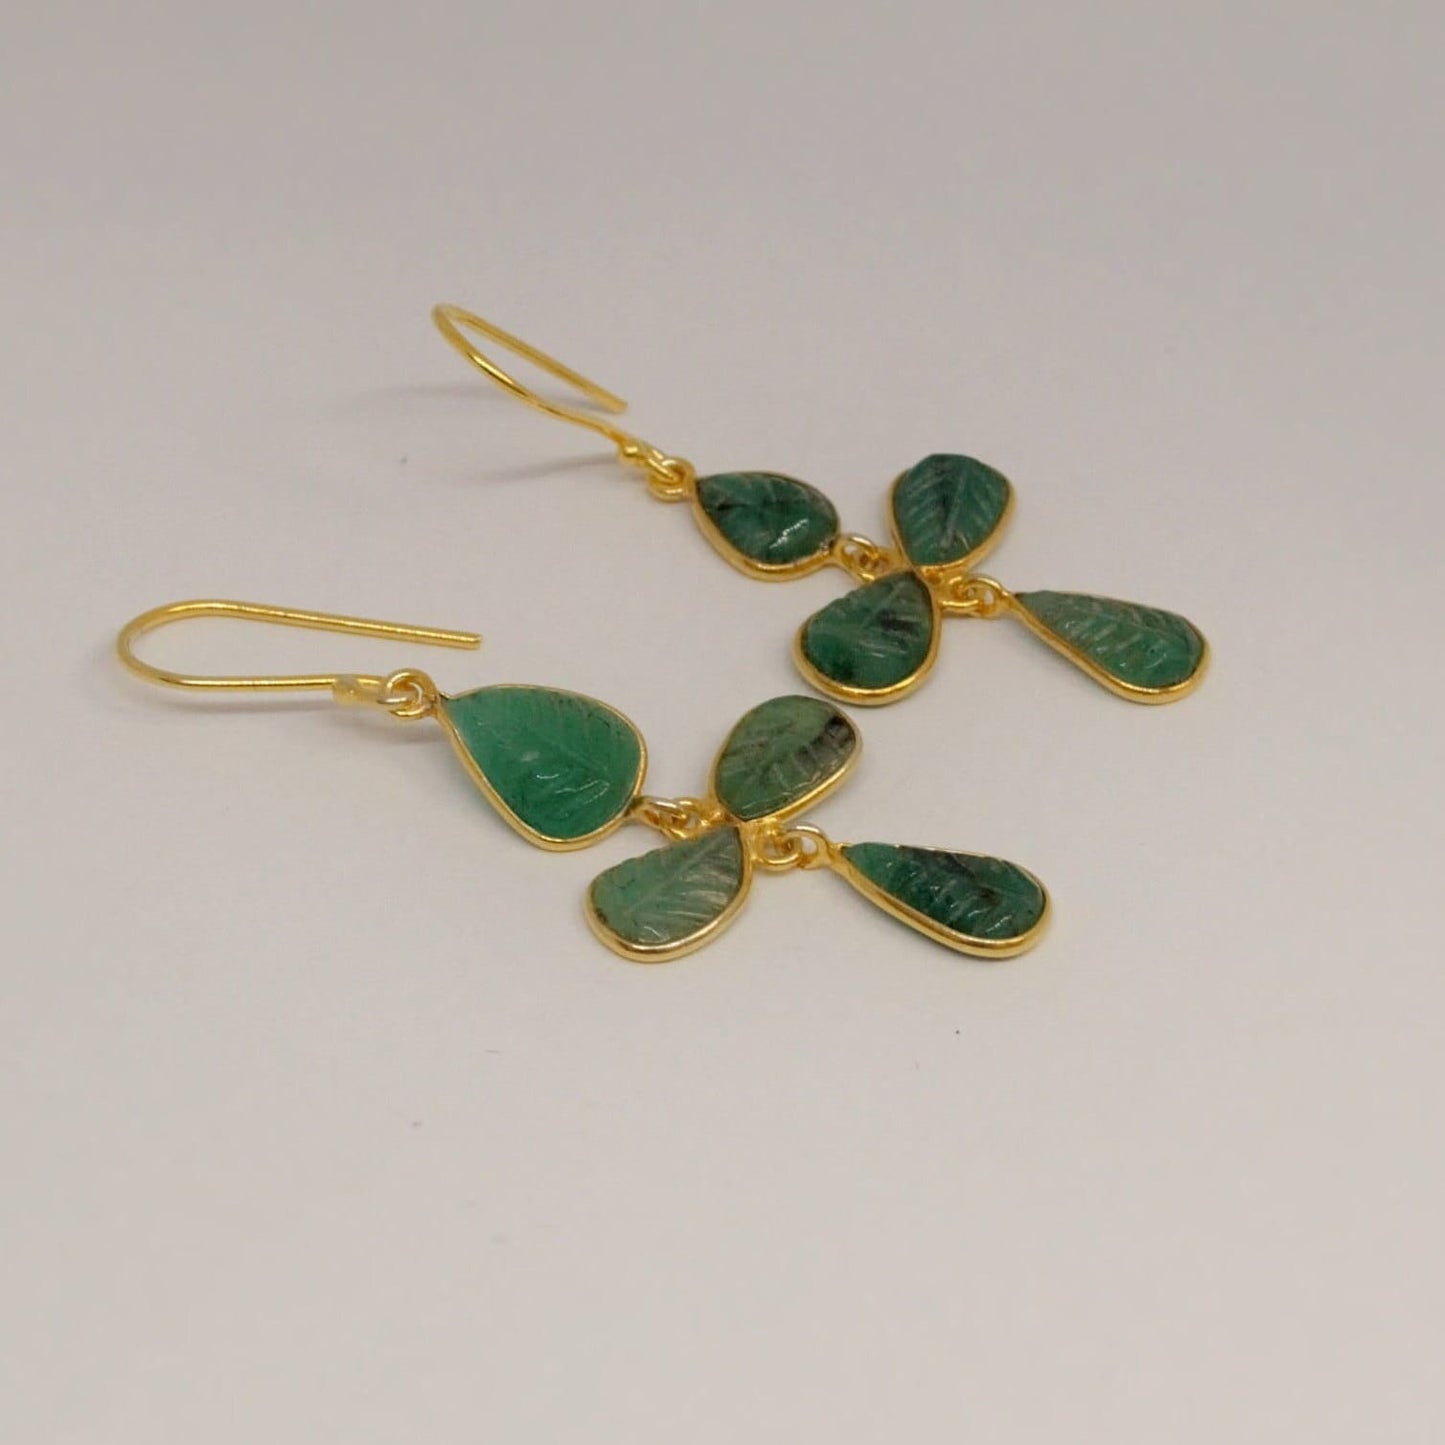 Emerald Earrings, Gold Earrings, Sterling Silver Earrings, May Birthstone, Green Earrings, Gifts For Her